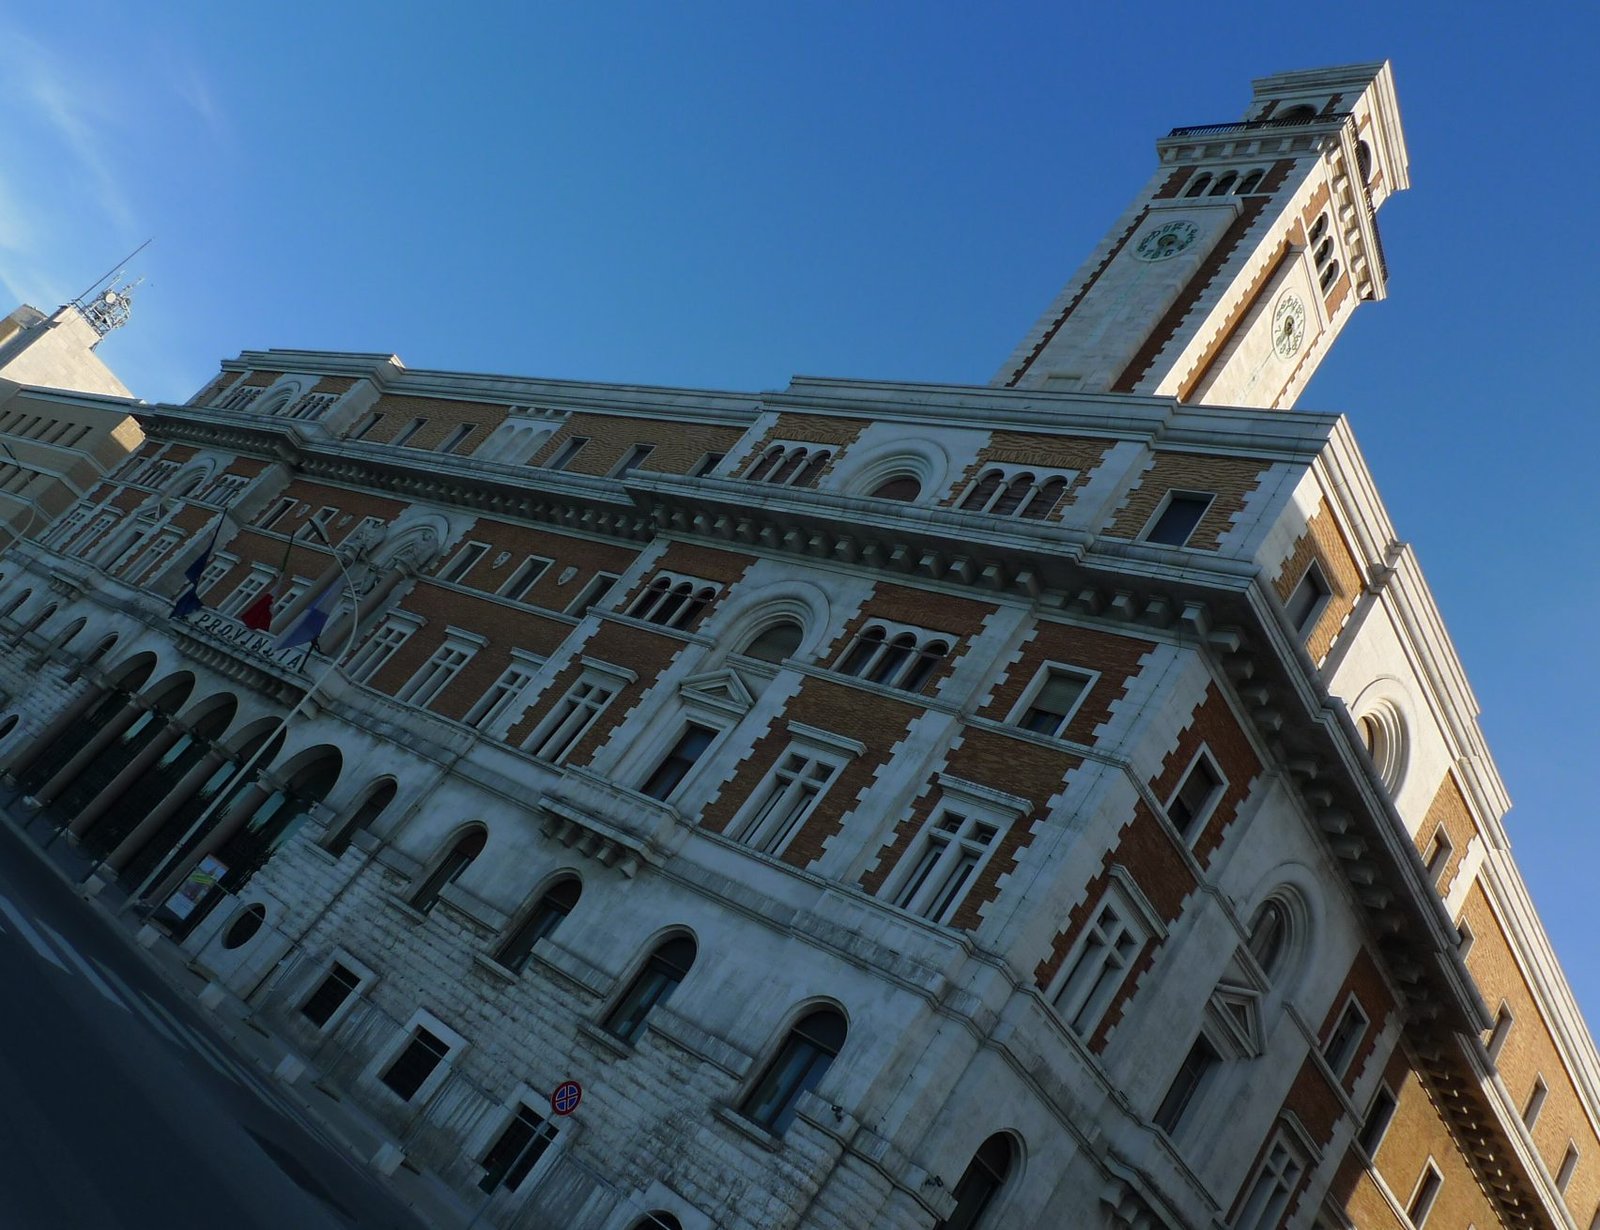 Metropolitan Art Gallery of Bari